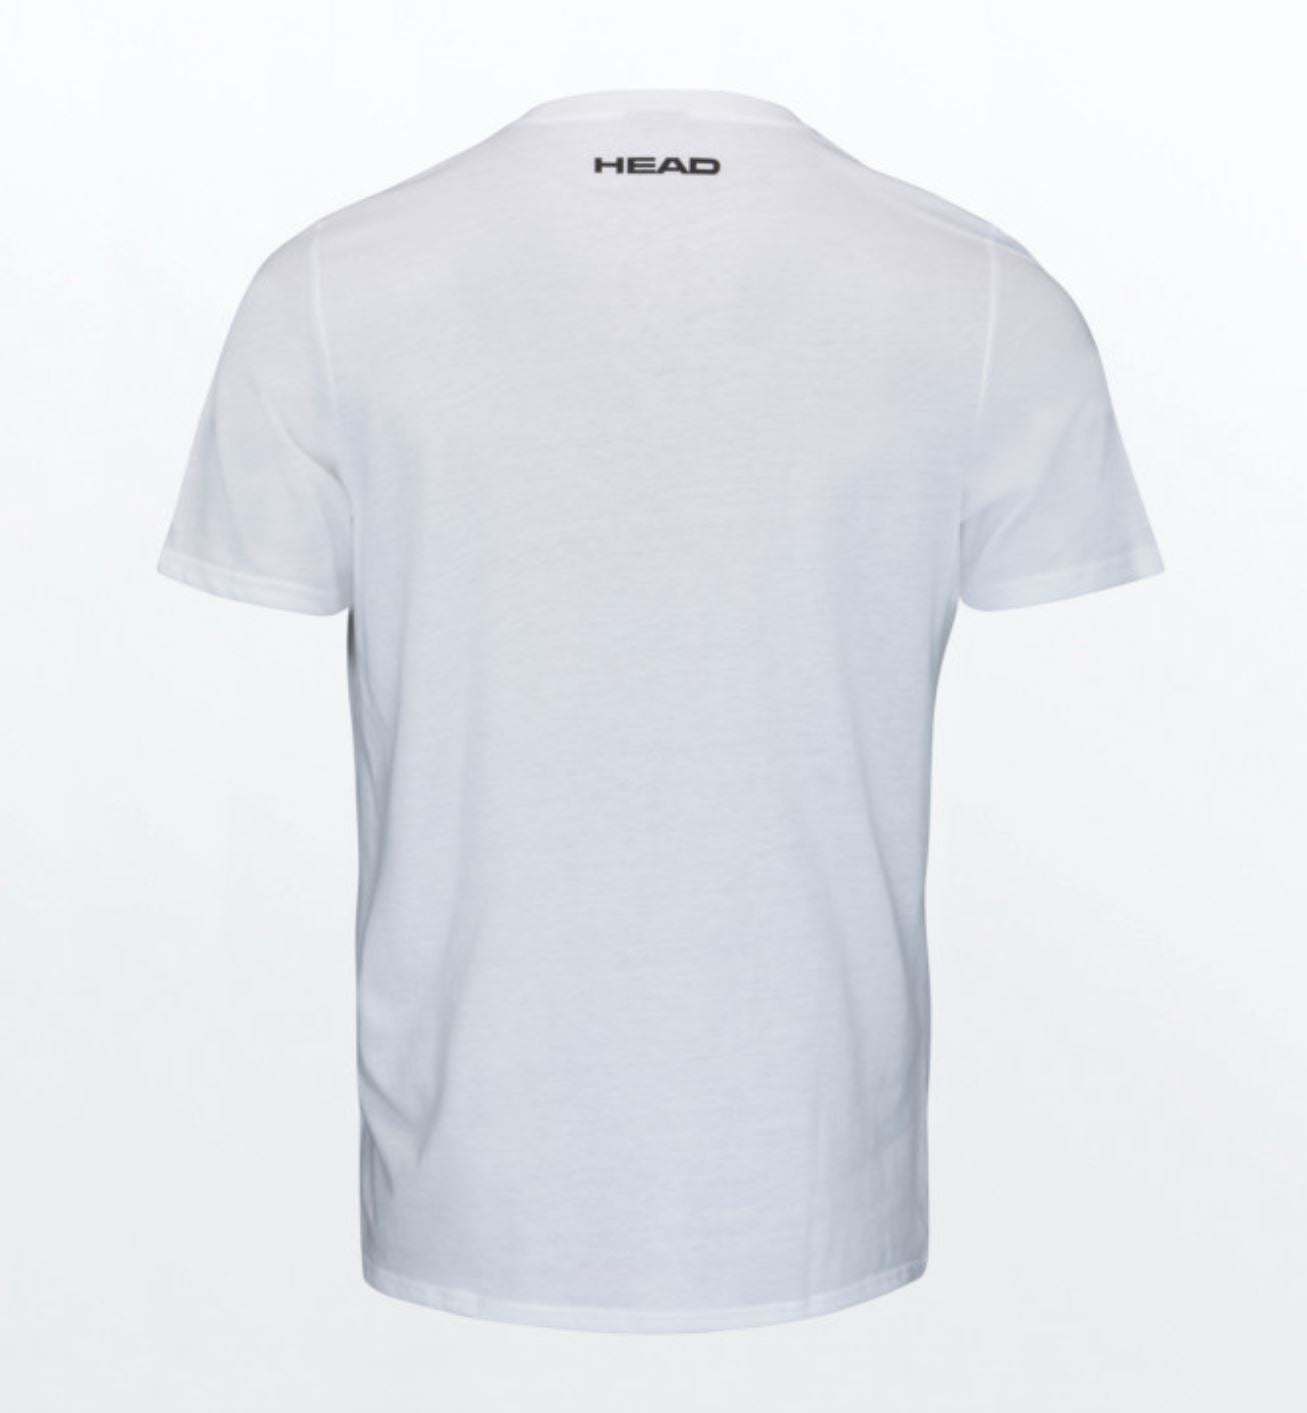 Head T-shirt (White)